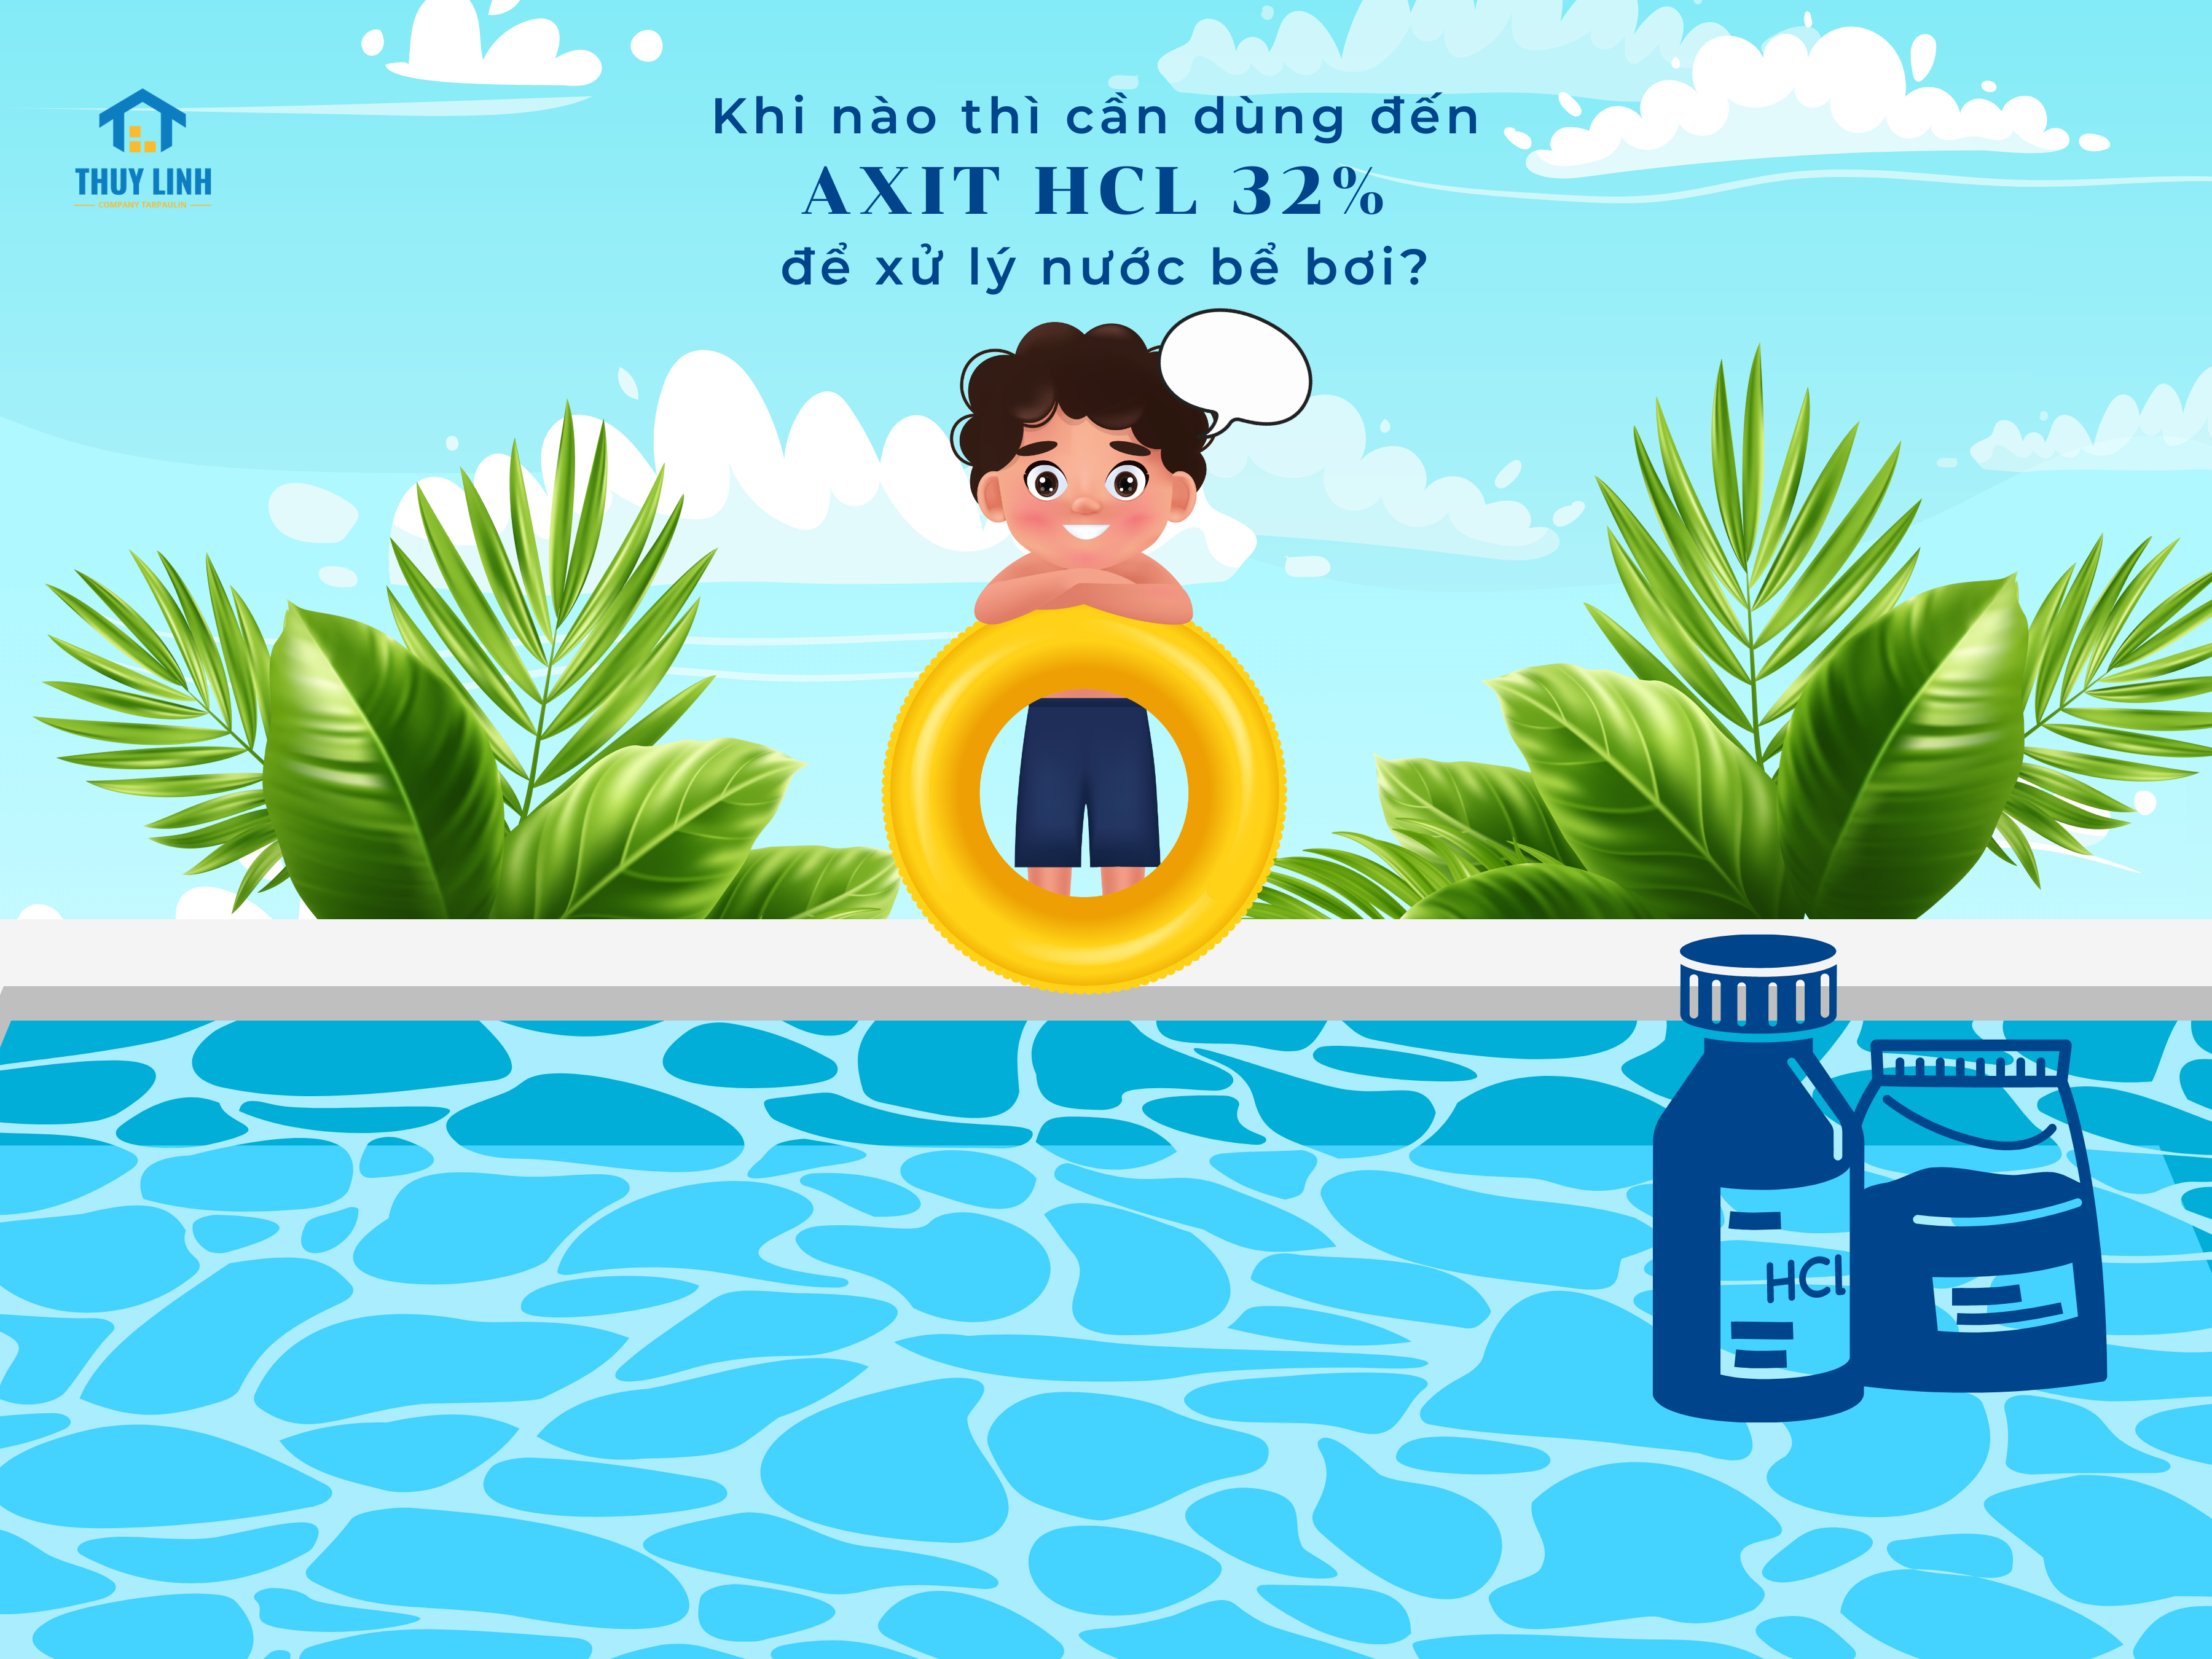 Hóa chất xử lý nước bể bơi axit HCL 32%.